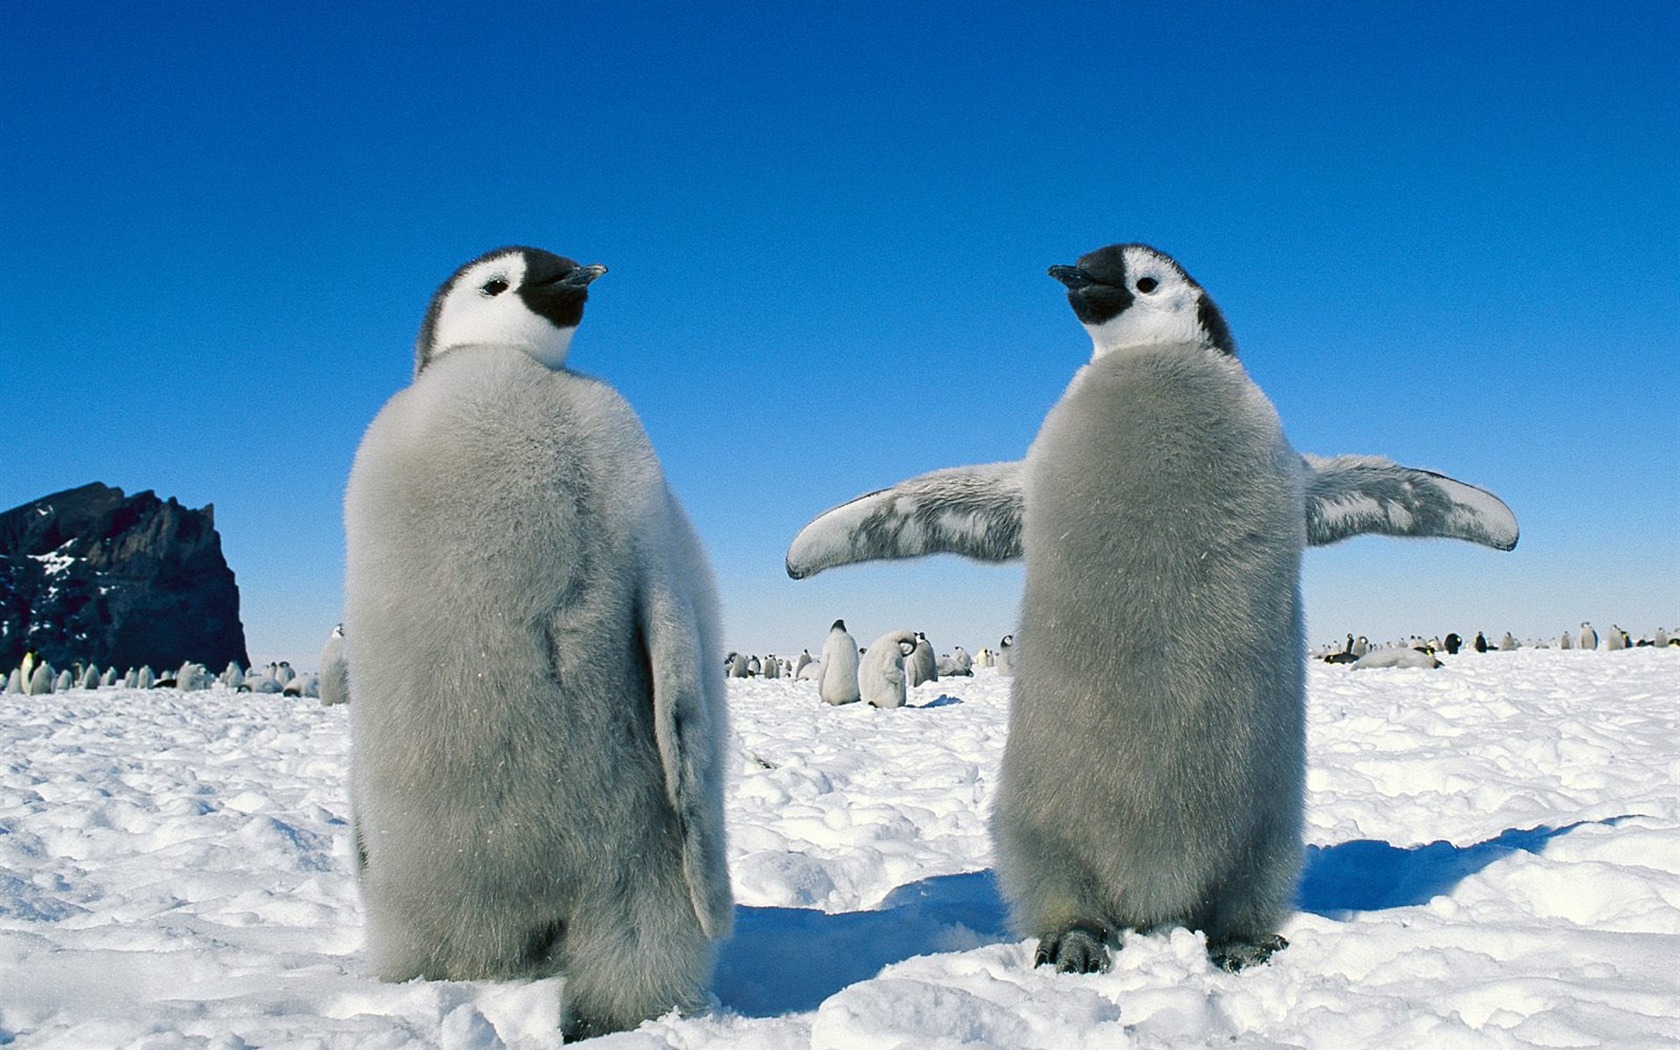 企鹅 动物 野生动物 大自然 企鹅 极地物种 萌宠动物壁纸(动物静态壁纸) - 静态壁纸下载 - 元气壁纸